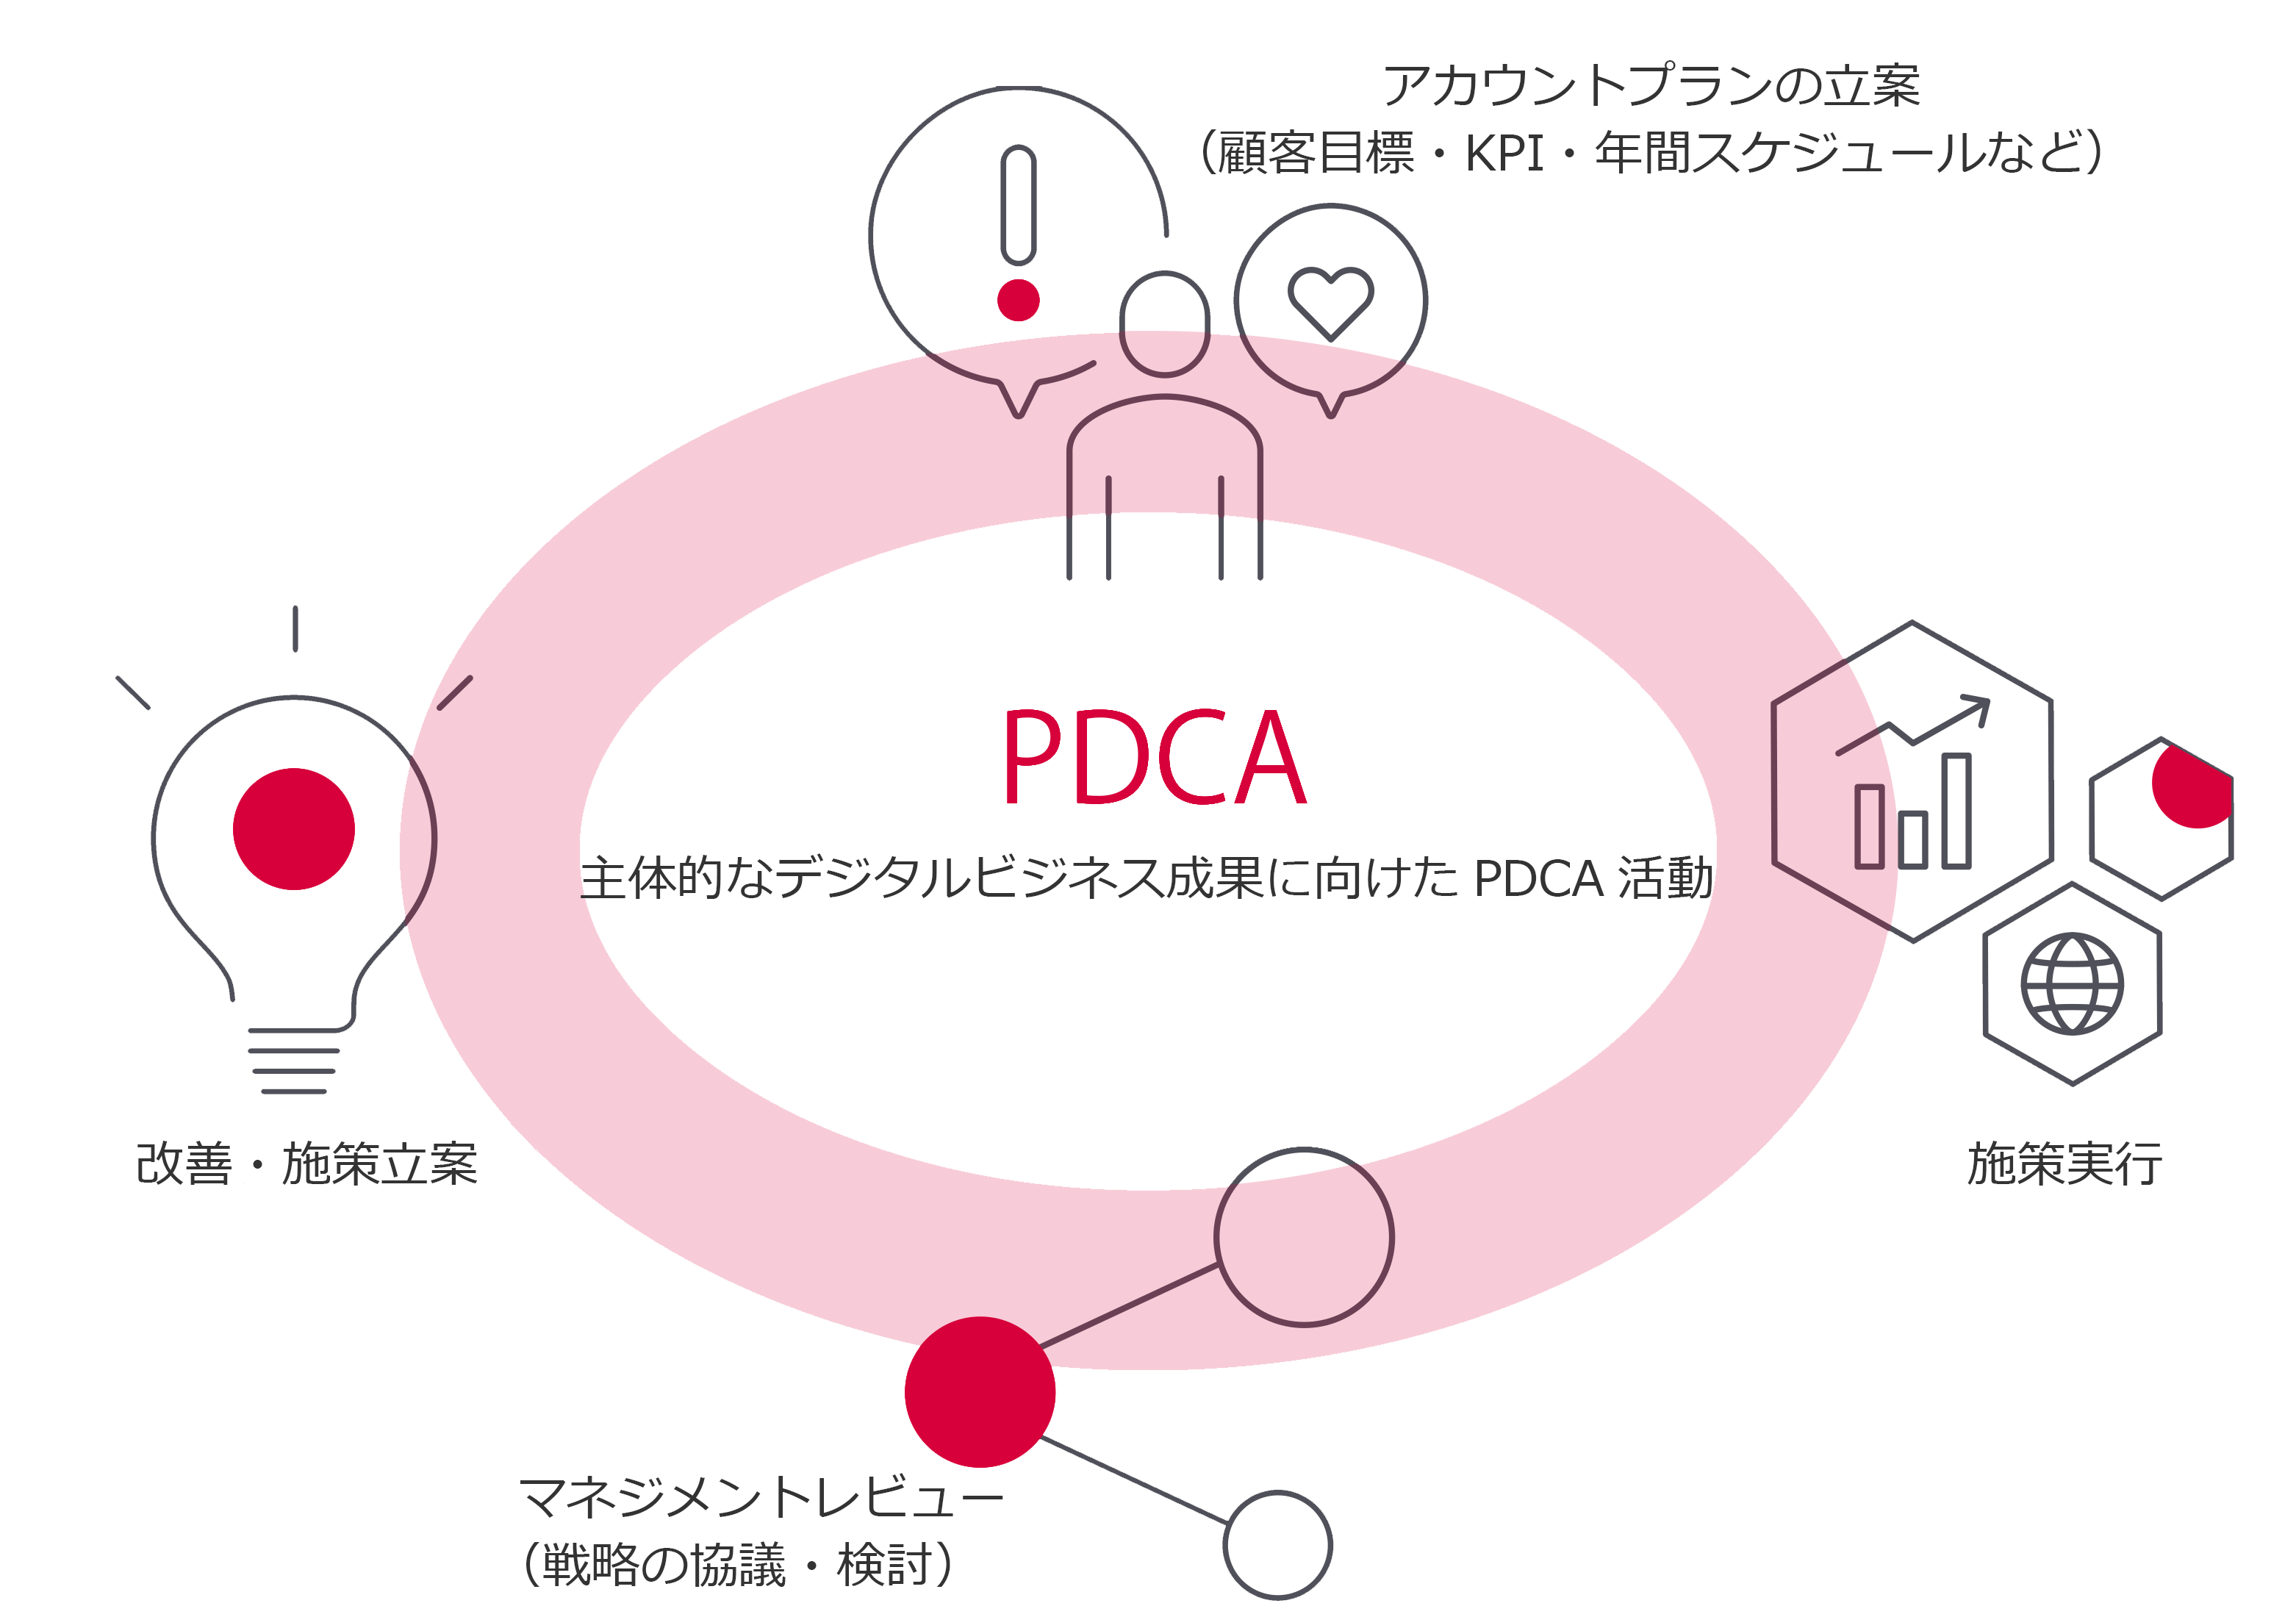 主体的なデジタルビジネス成果に向けたPDCA活動